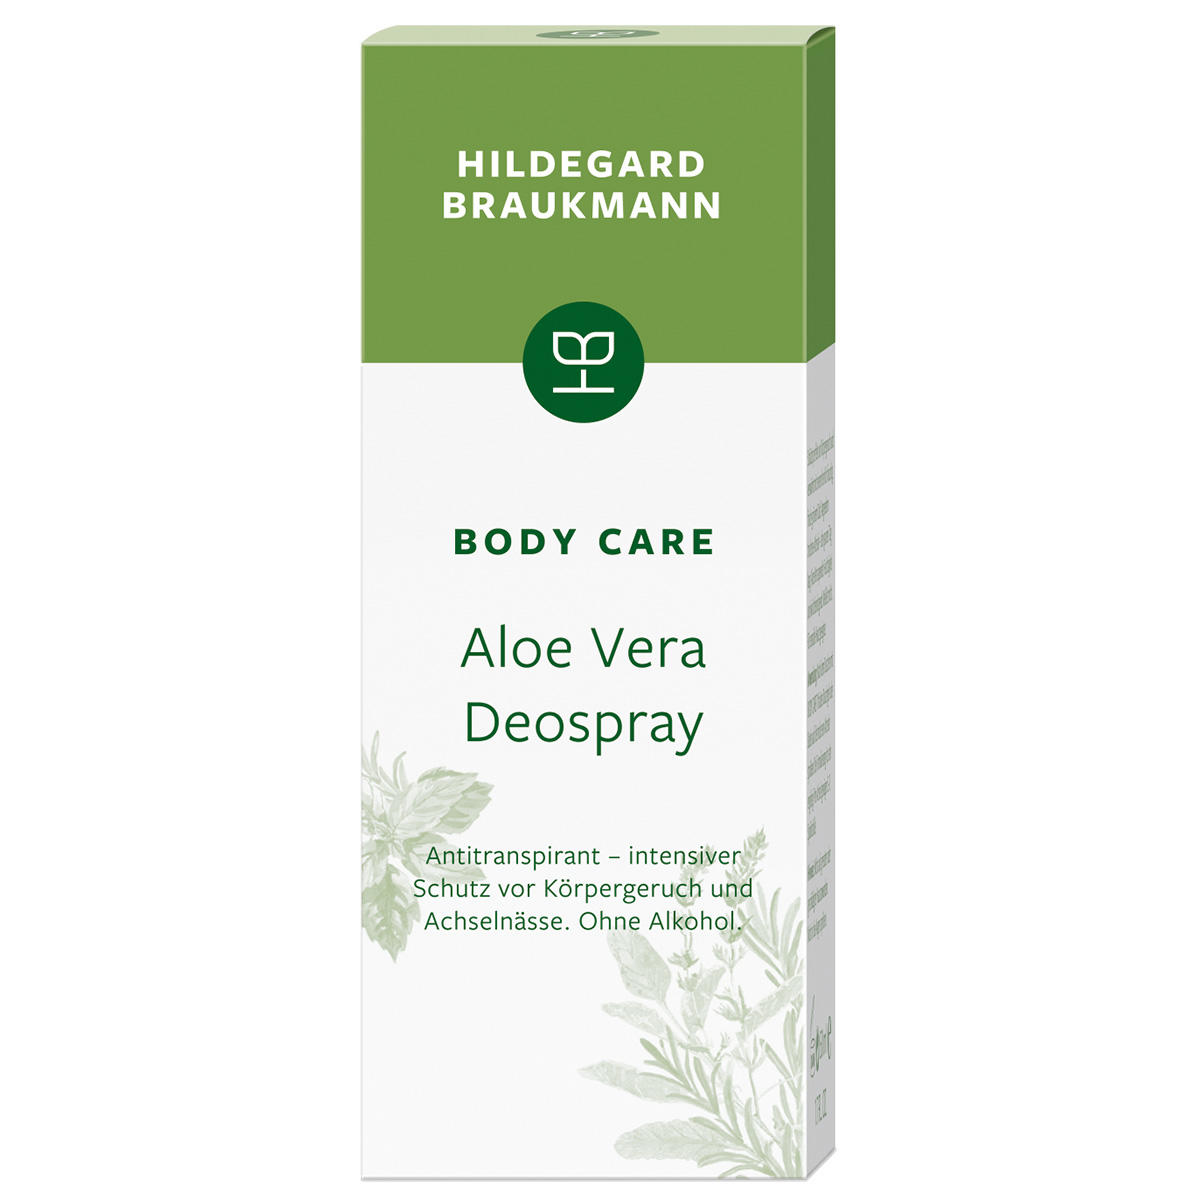 Hildegard Braukmann BODY CARE Aloe Vera Deospray 50 ml - 2